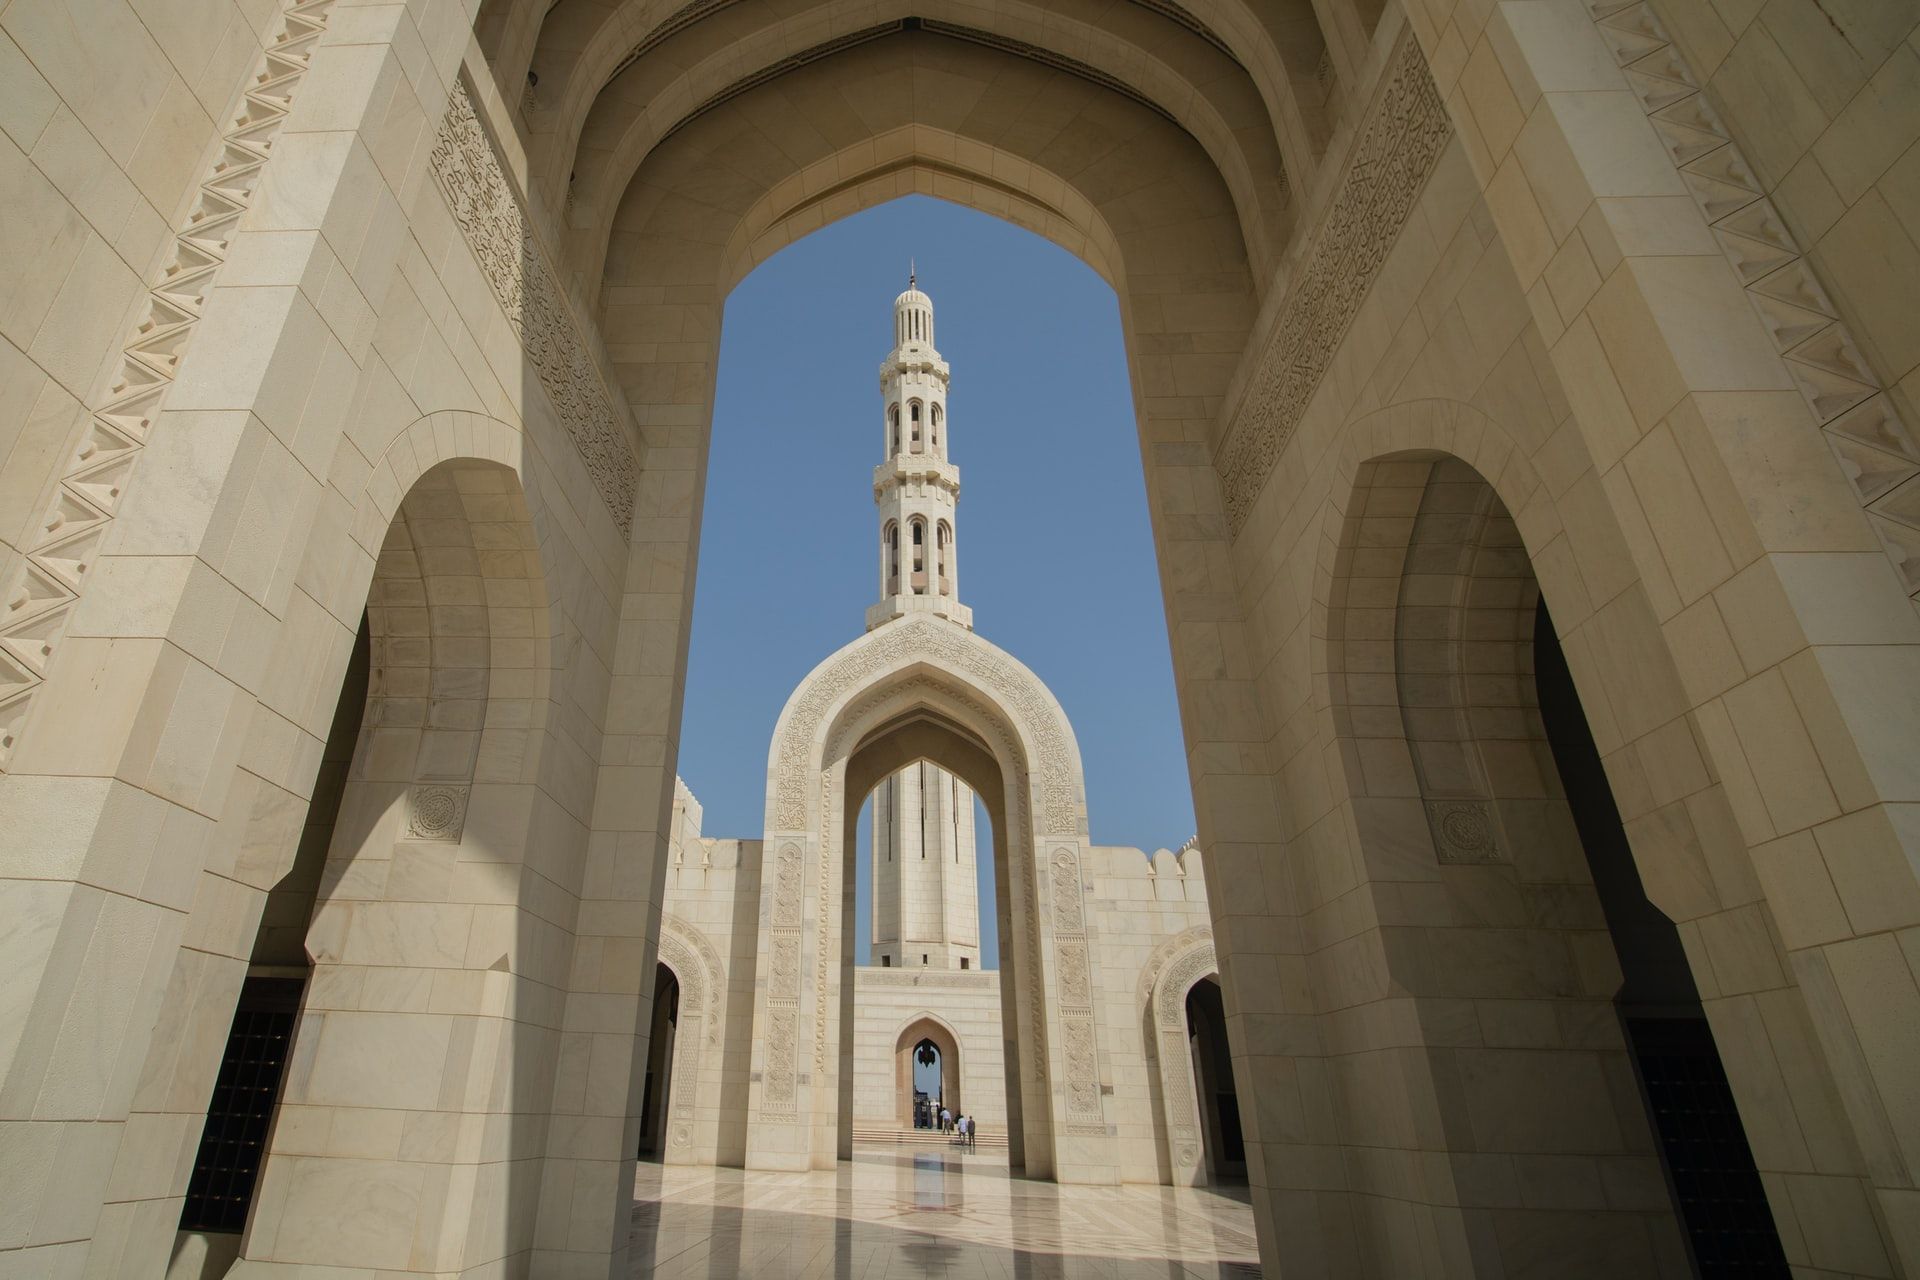 Sultan Qaboos Grand Mosque, Oman